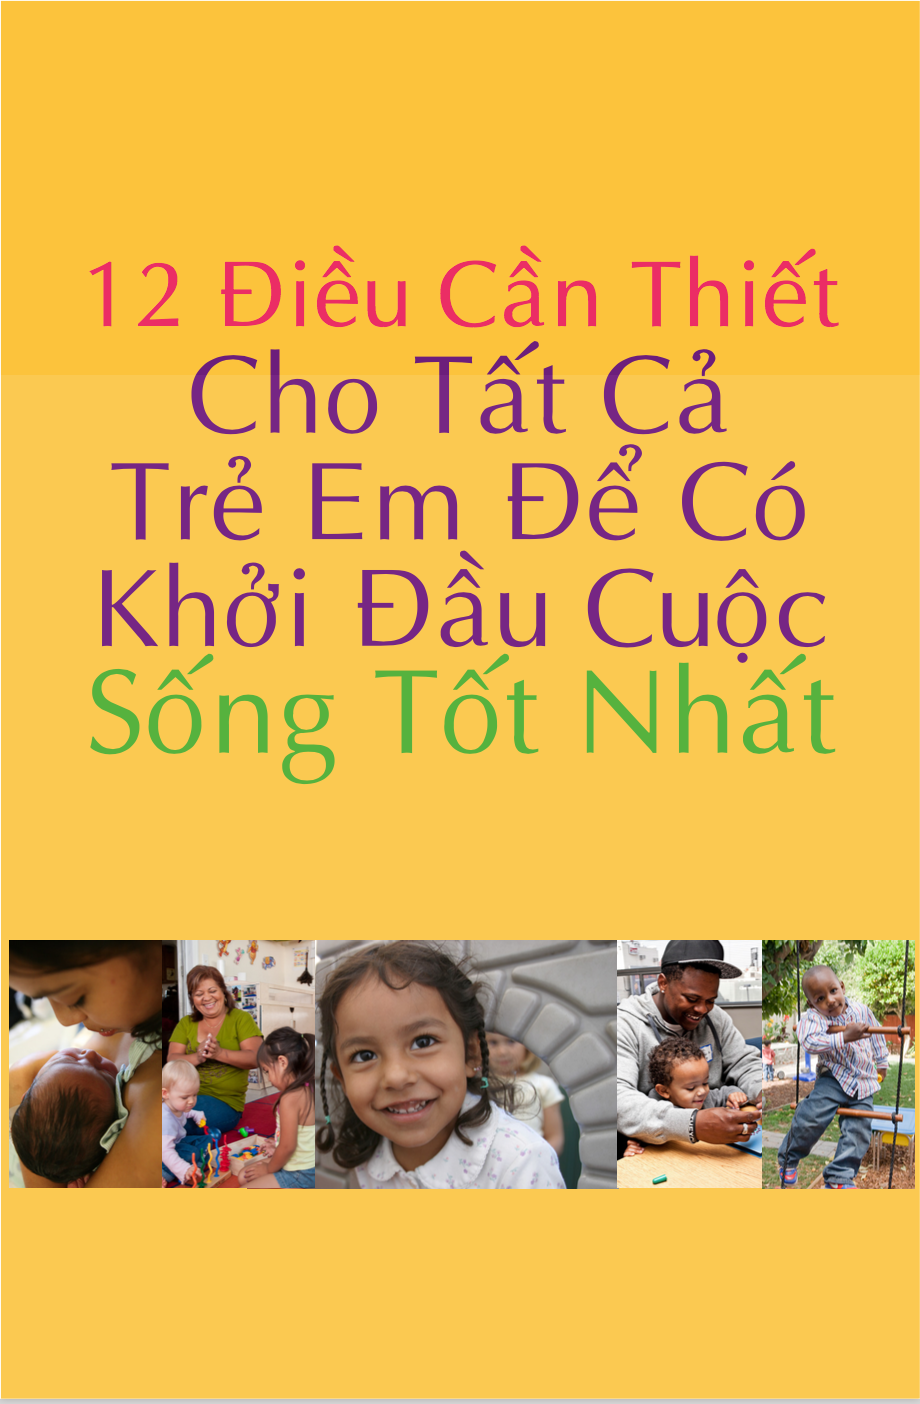 12 Things Booklet in Vietnamese